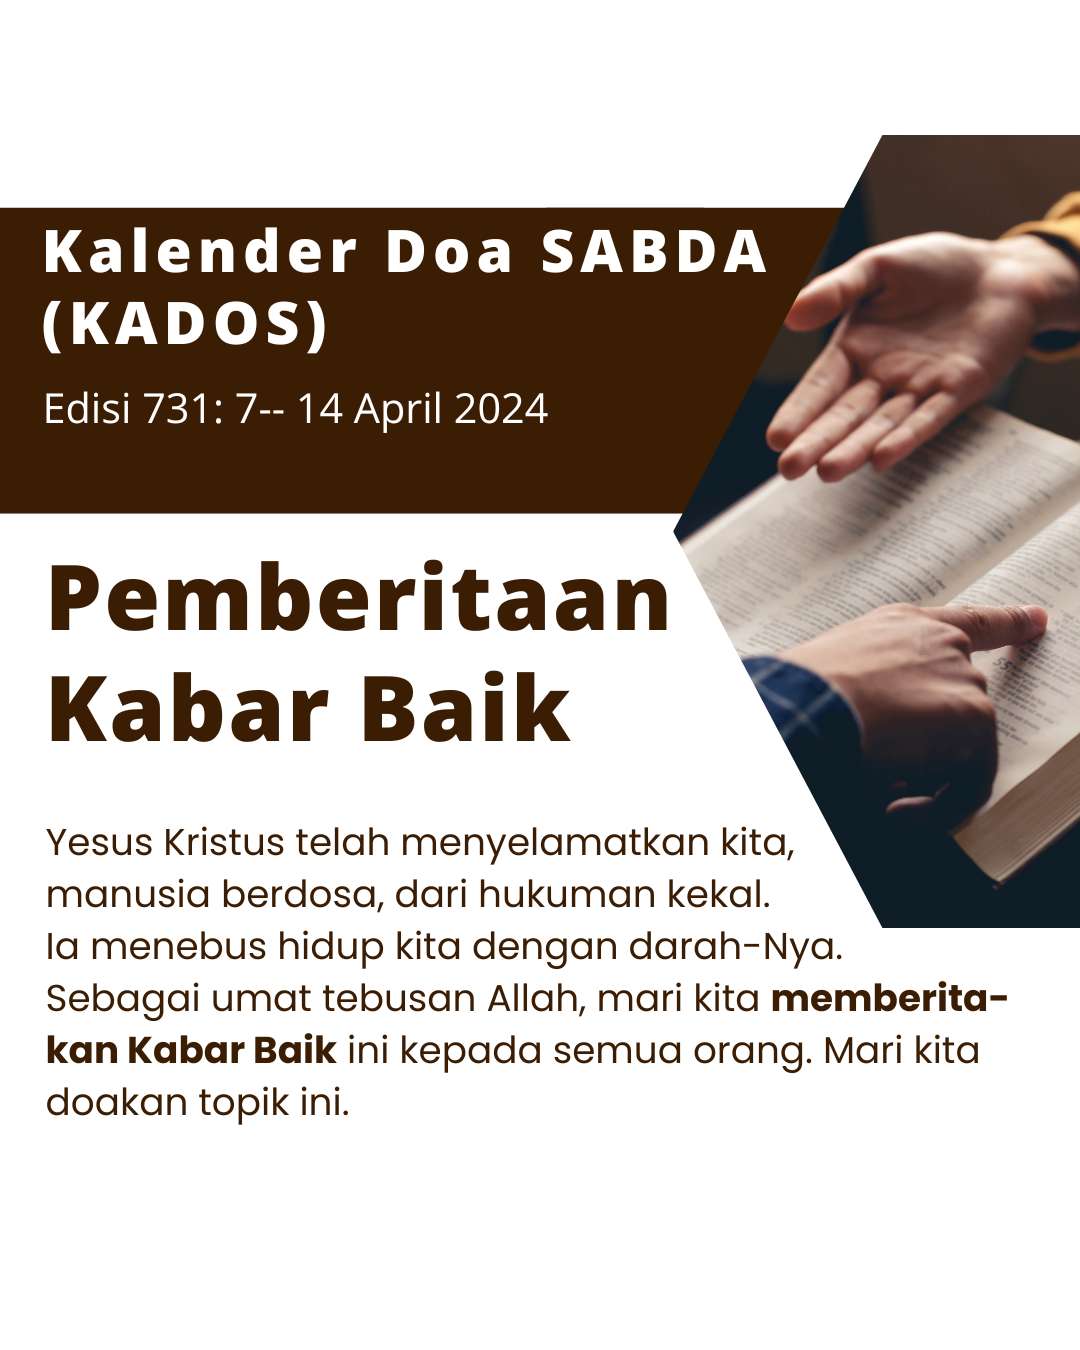 Pokok Doa KADOS 8 -- 14 April 2024